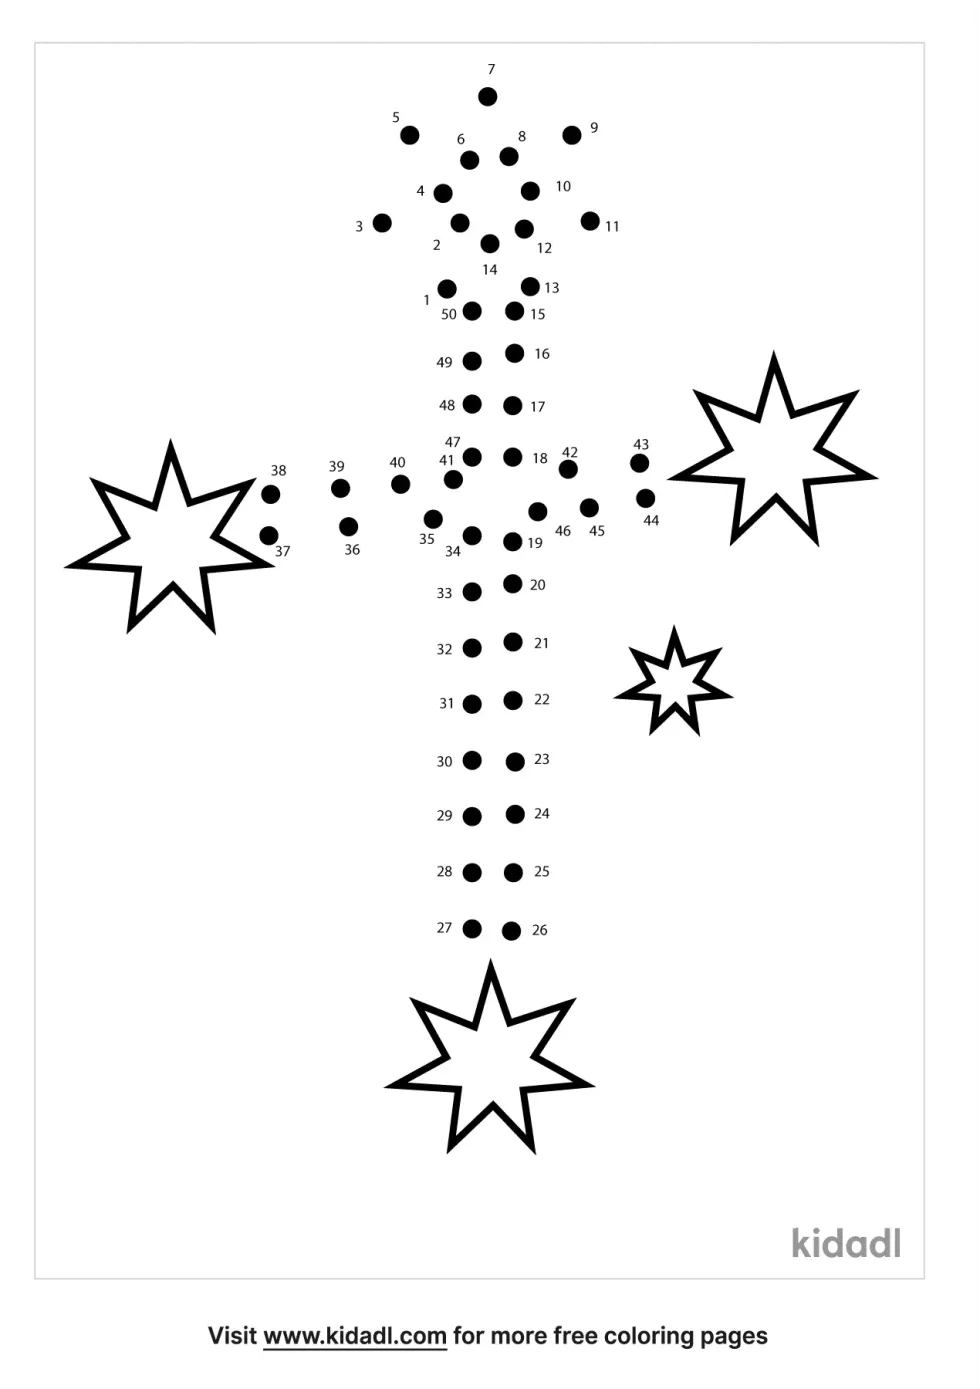 Crux Constellation